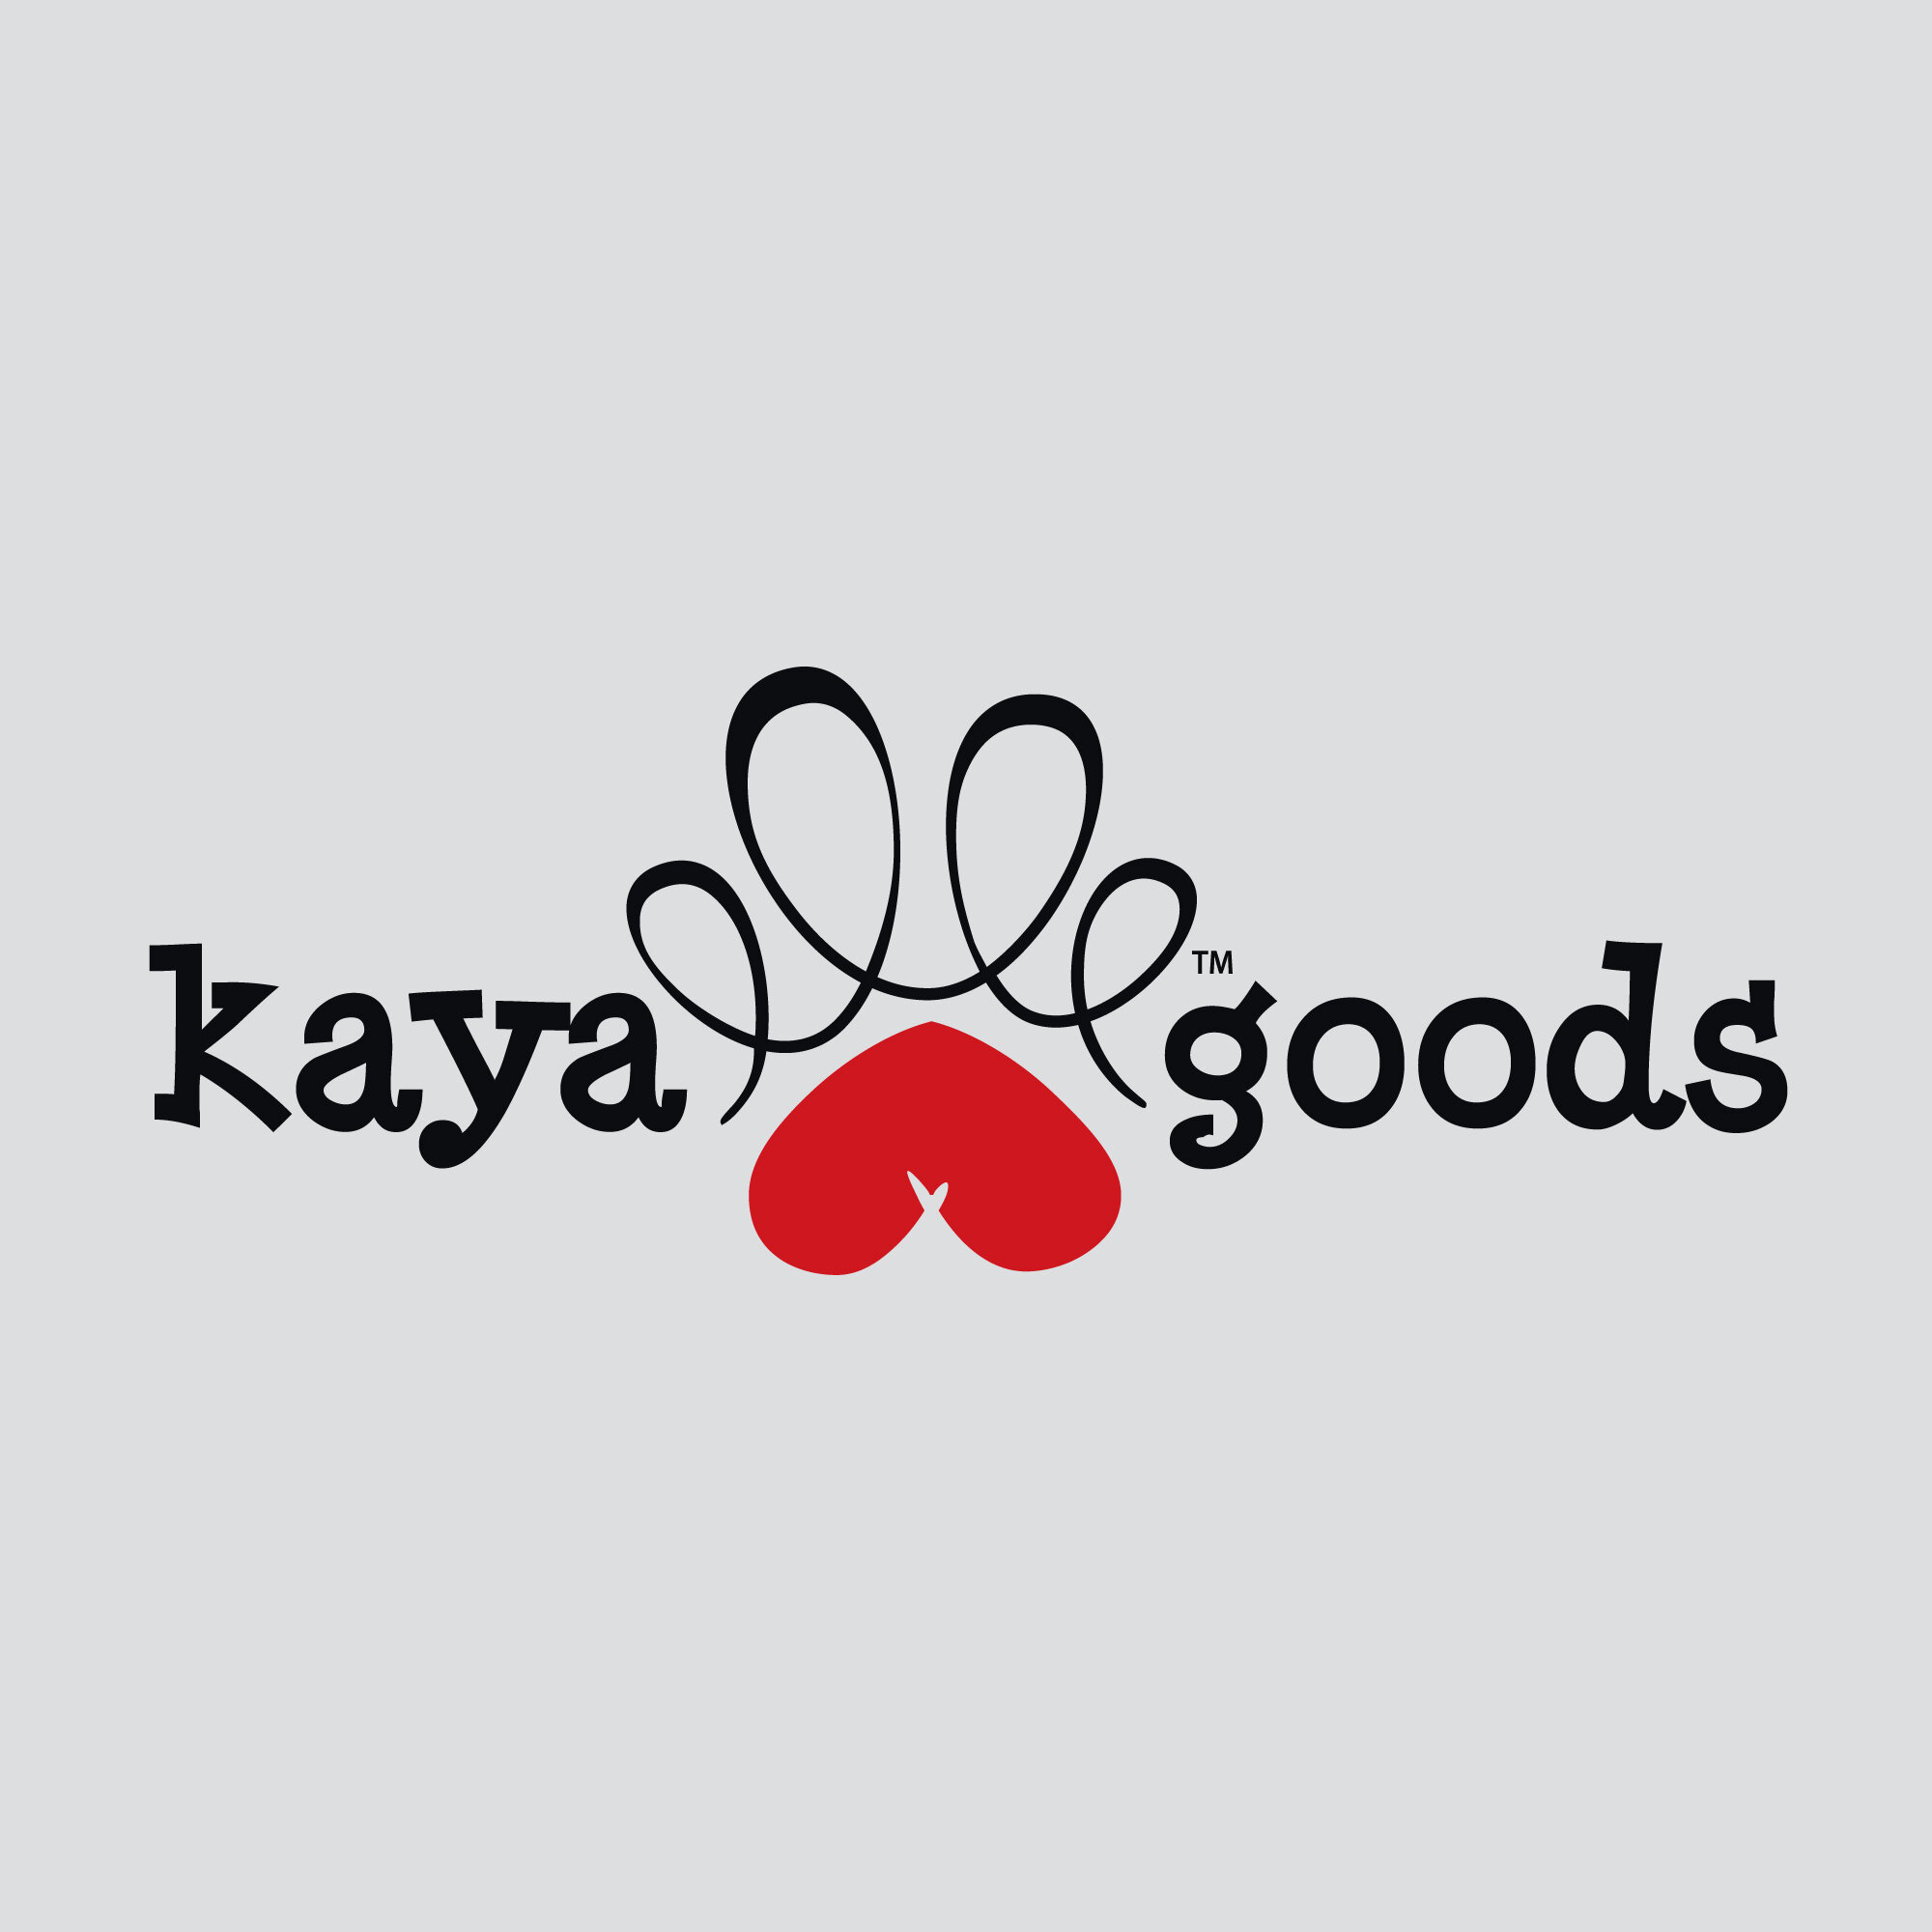 kayagoods_logo.jpg